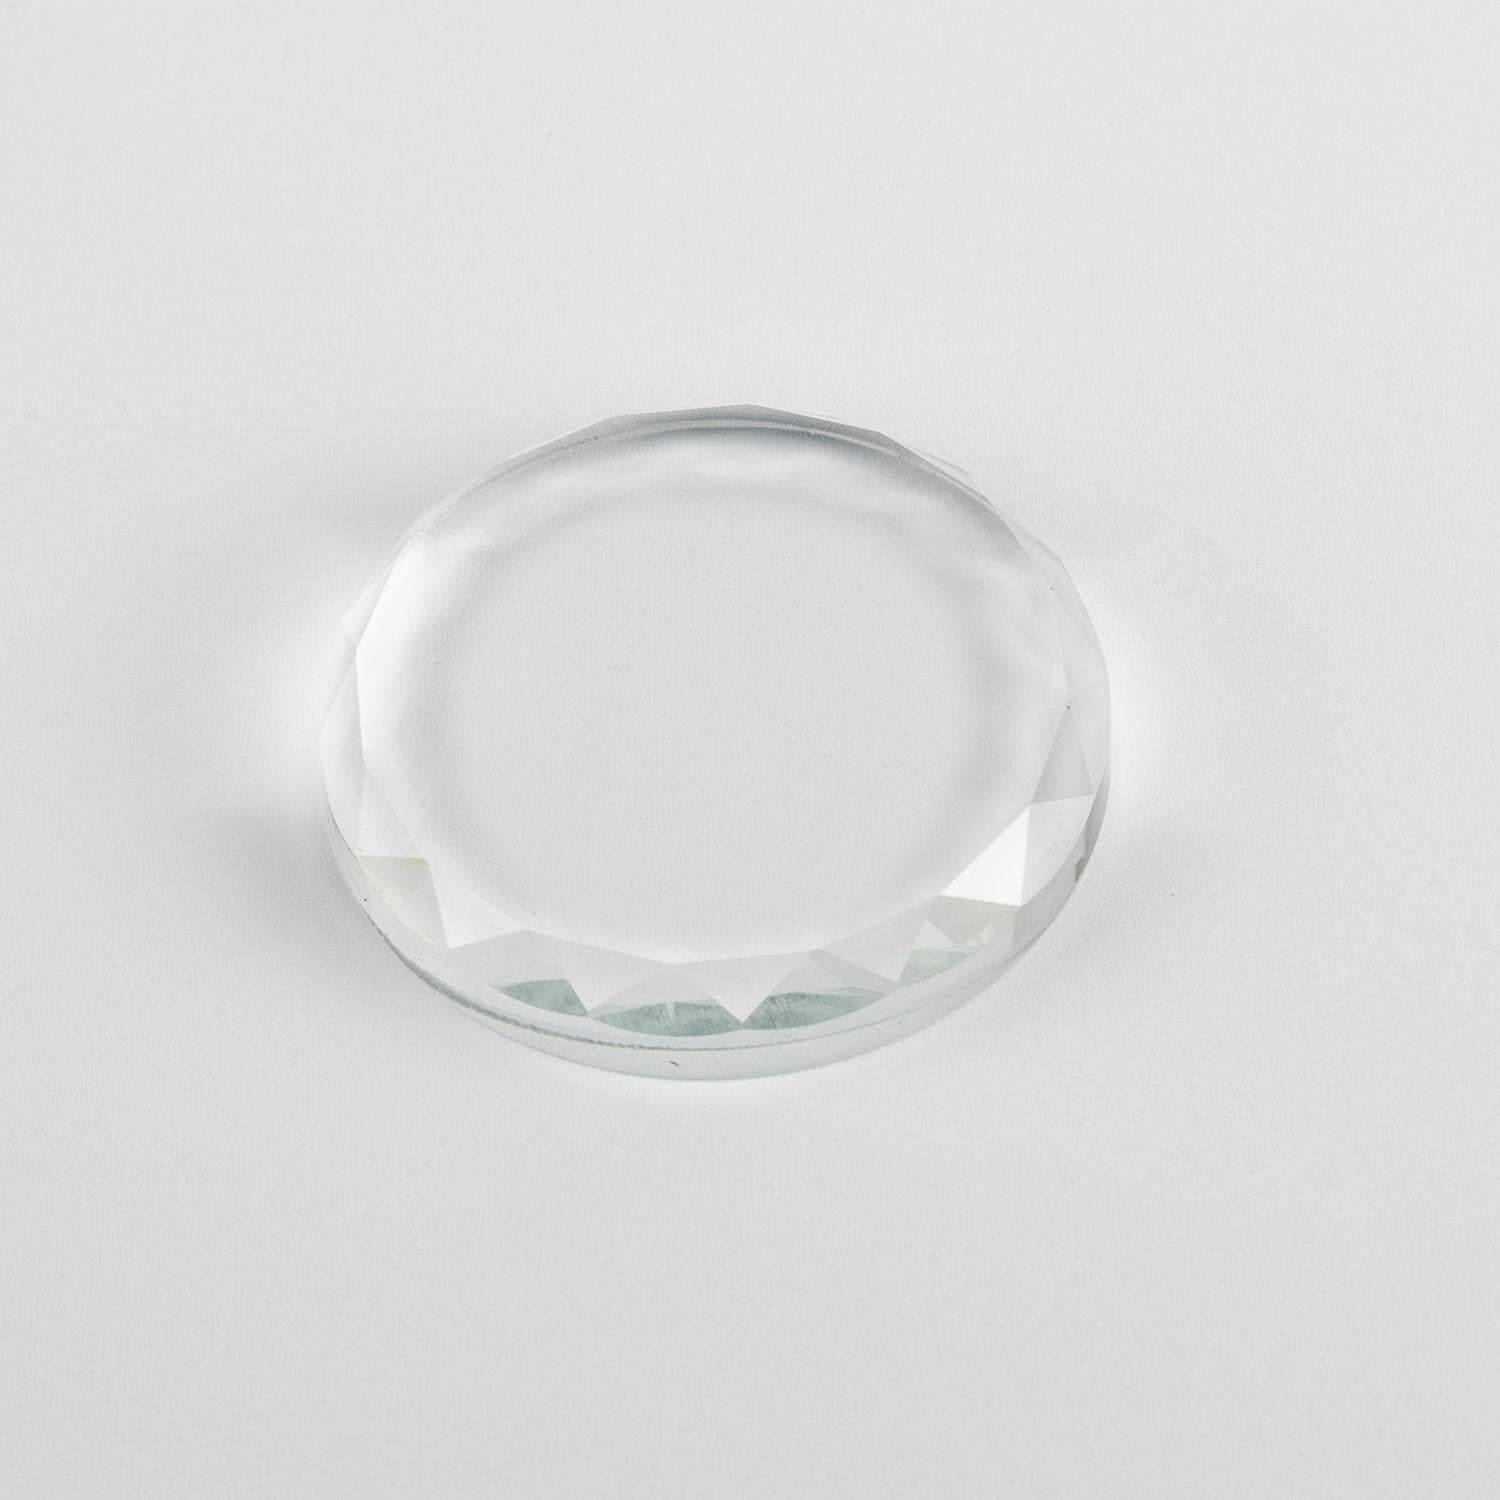 GLASS CIRCLE TILE